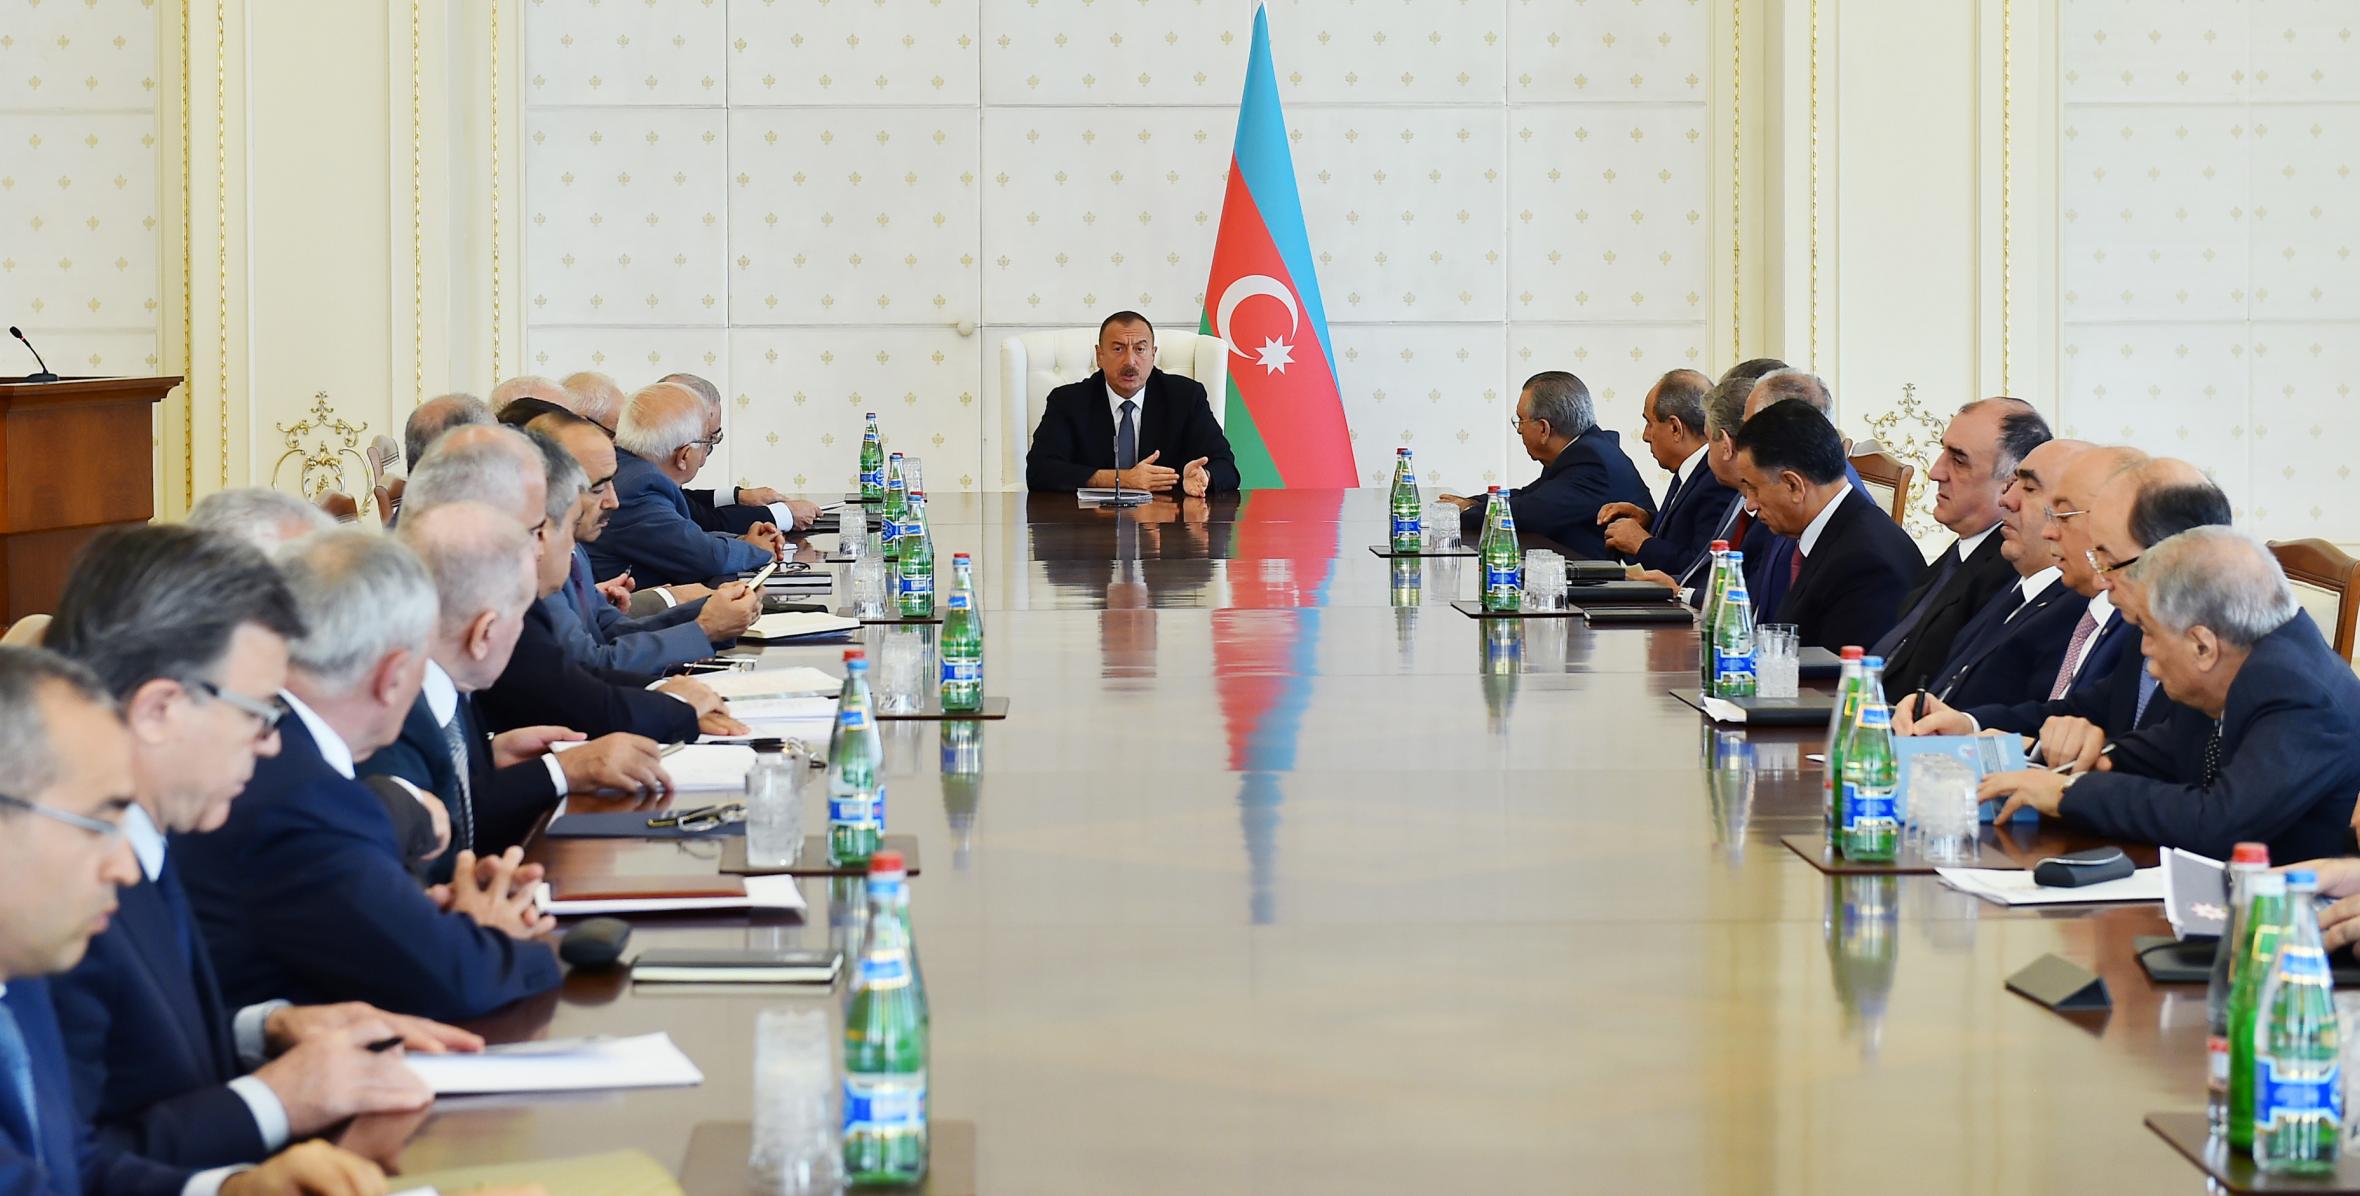 Заключительная речь Ильхама Алиева на заседании Кабинета Министров, посвященное итогам социально-экономического развития в первой половине 2016 года и предстоящим задачам